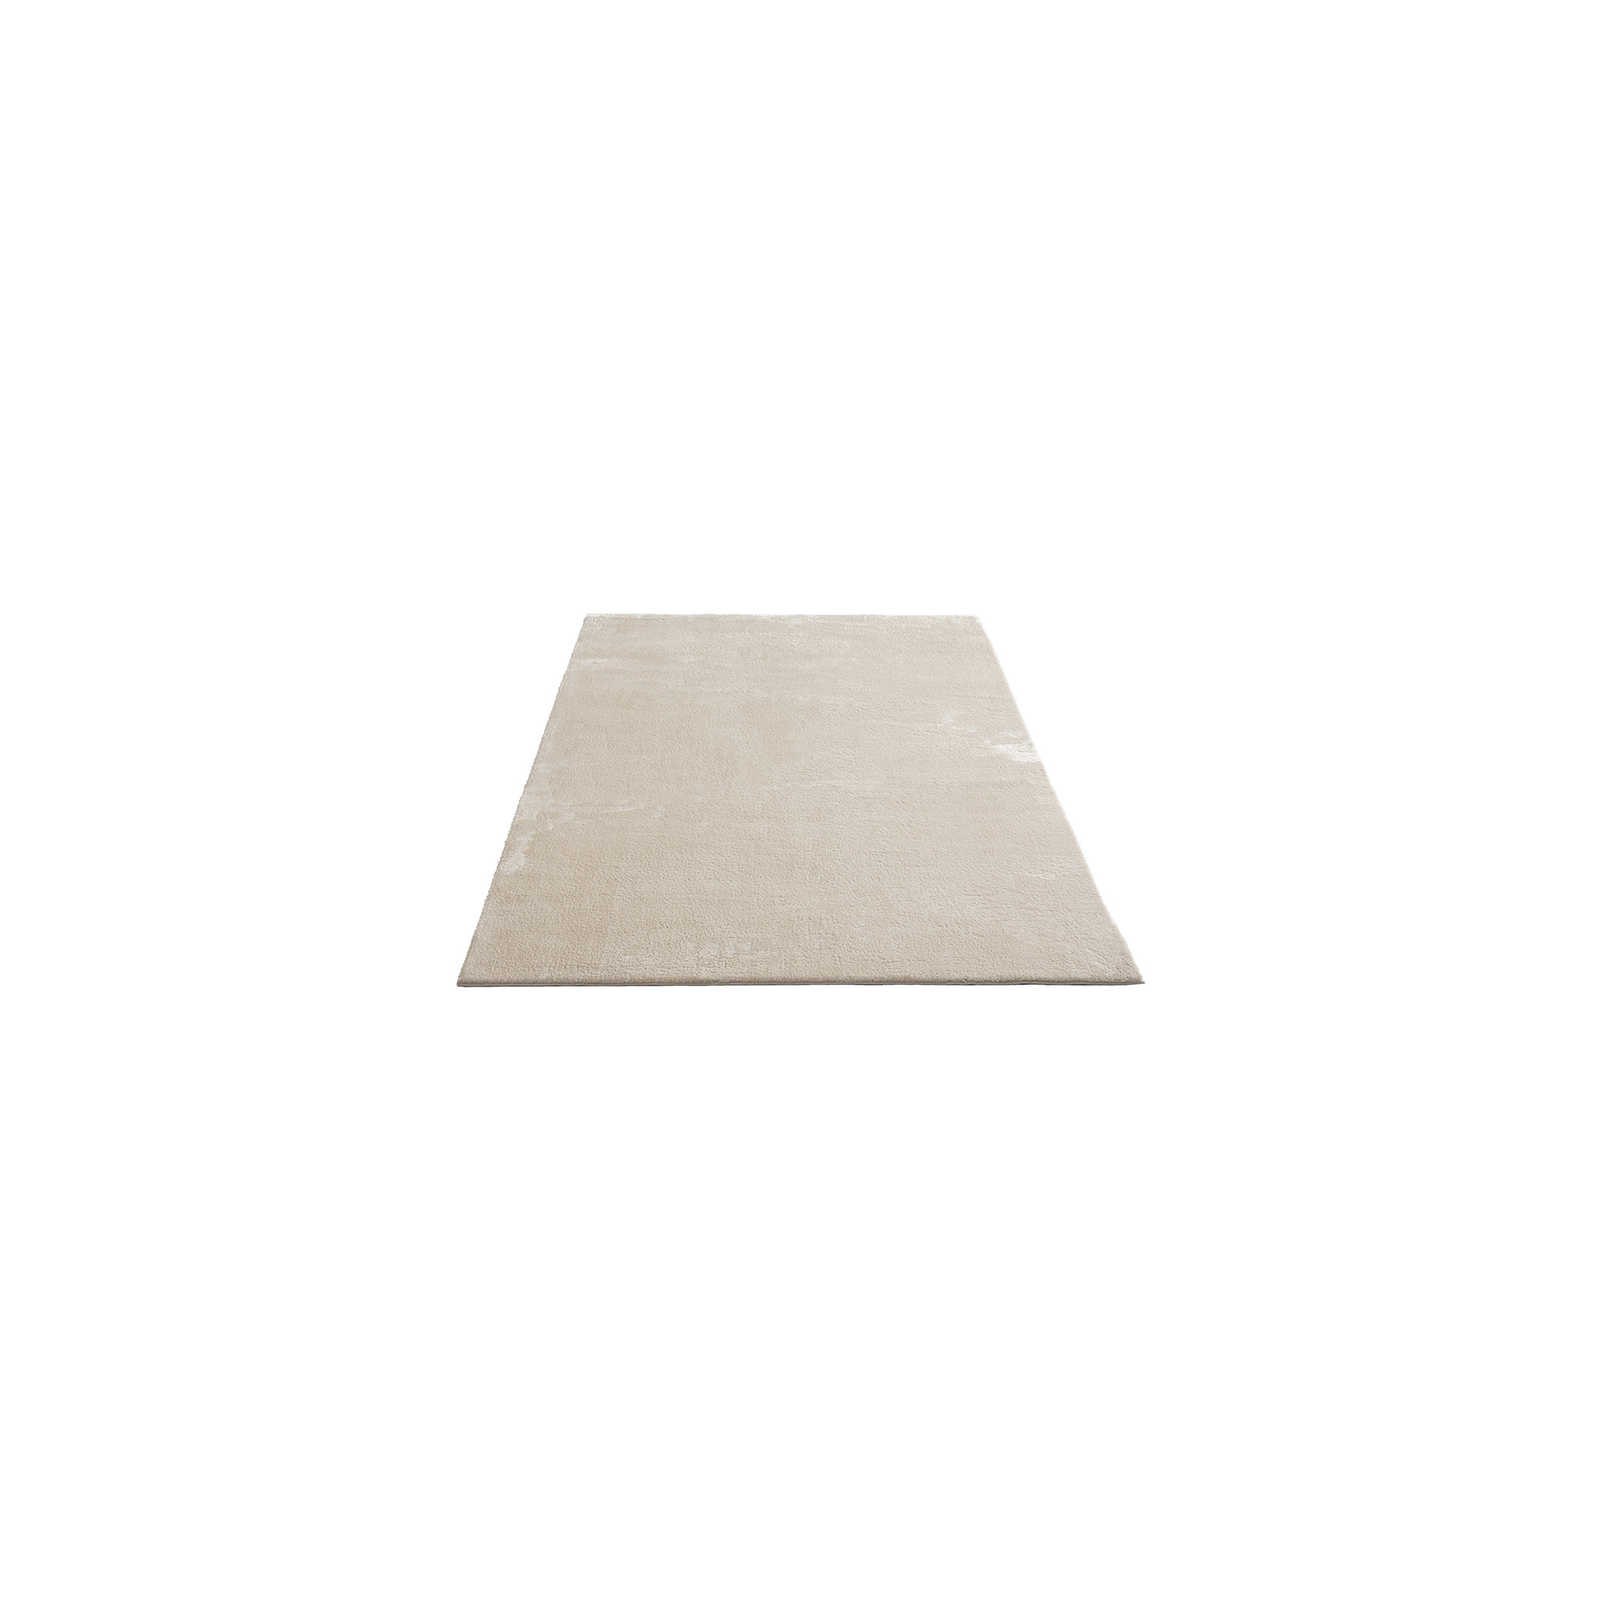 Soft high pile carpet in beige - 150 x 80 cm
